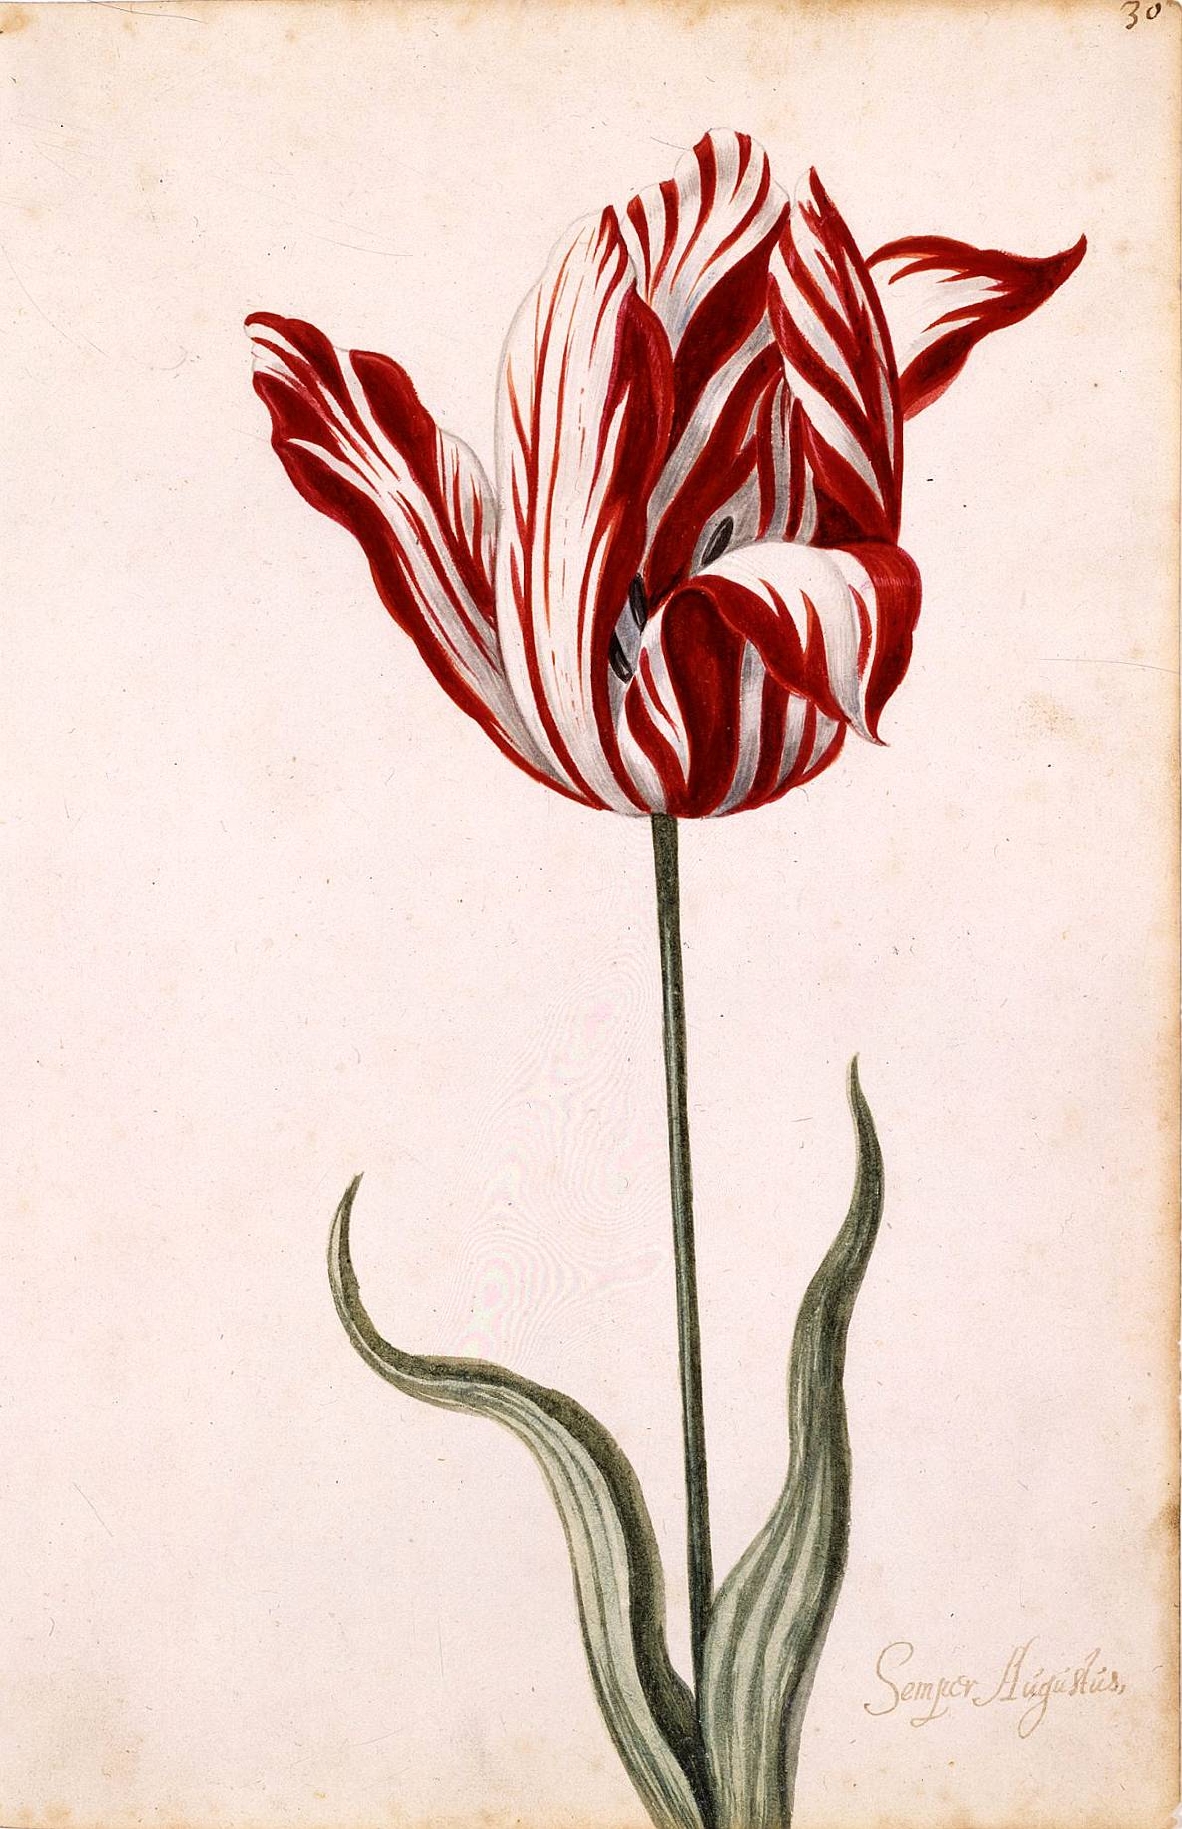 Aquarela anônima do século XVII da Semper Augustus, o bulbo mais famoso de tulipa, que foi vendido por preço recorde.